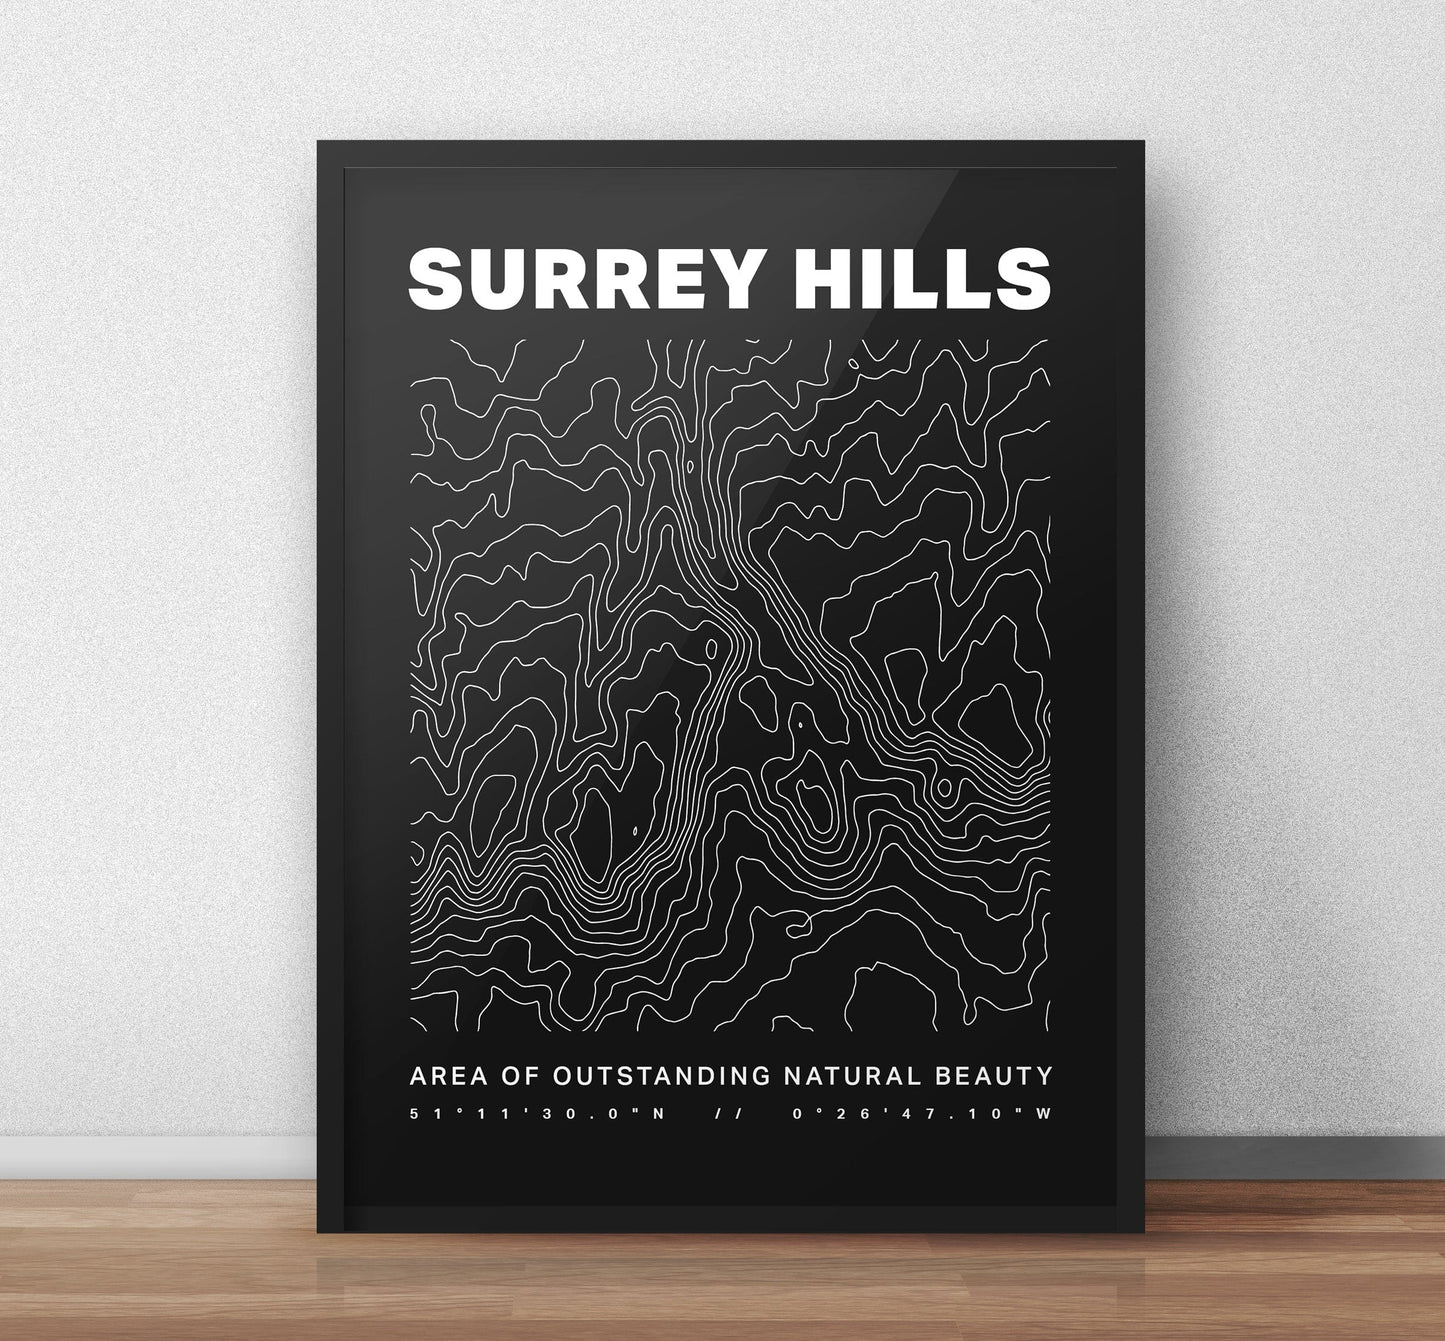 Surrey Hills AONB Konturen Kunstdruck